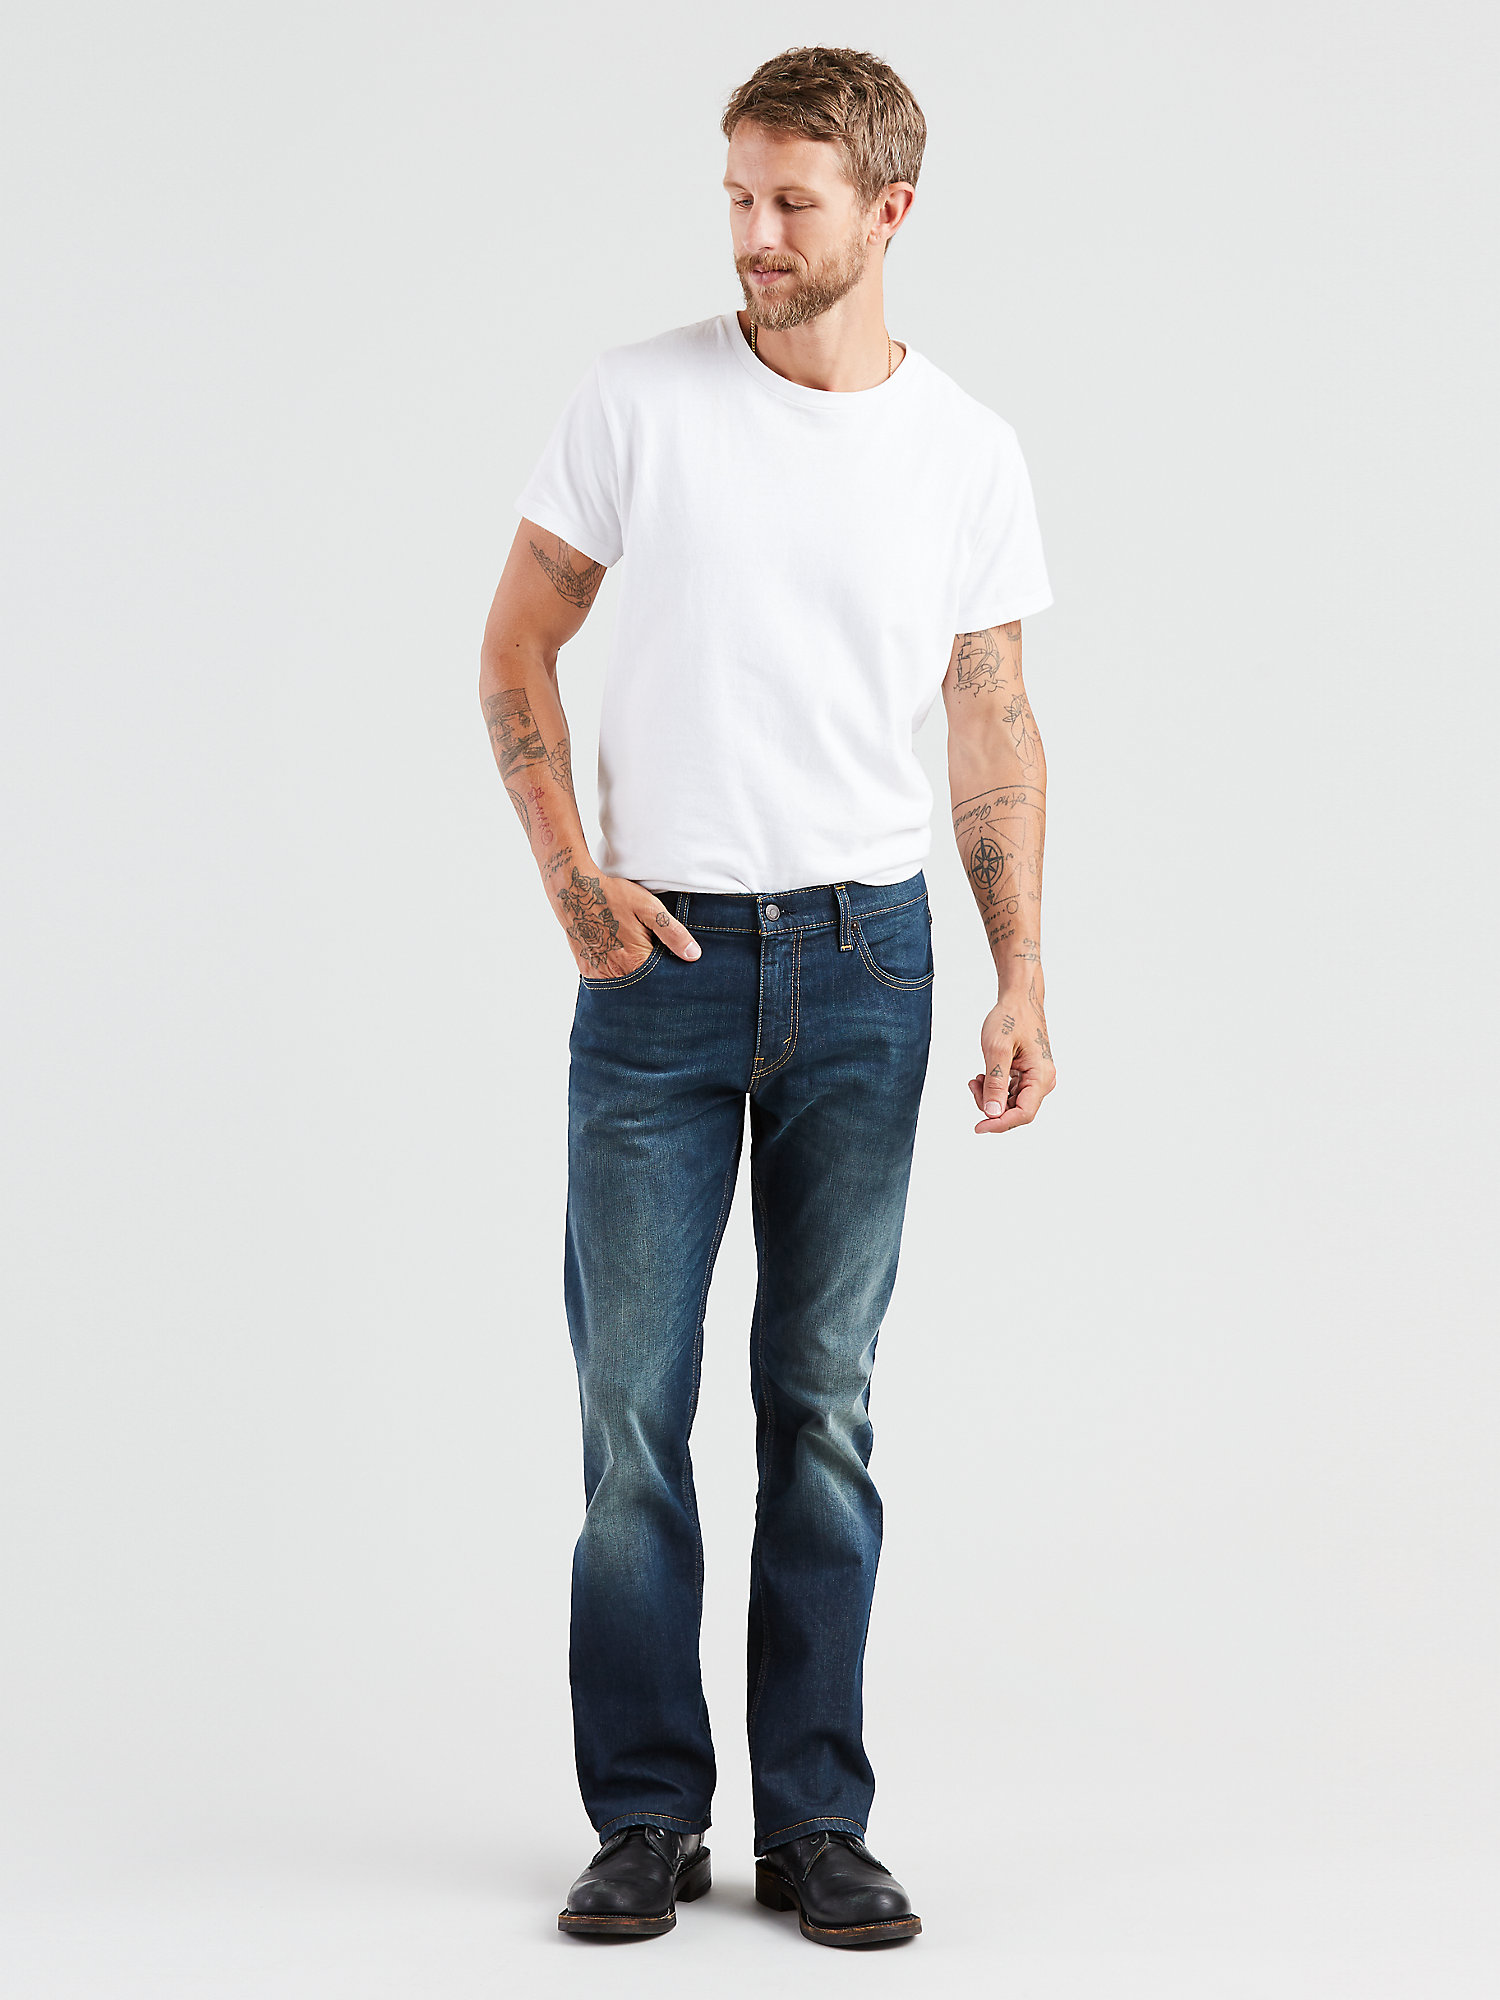 Levi's Men's 527 Slim Boot Cut Fit Jeans - image 4 of 7